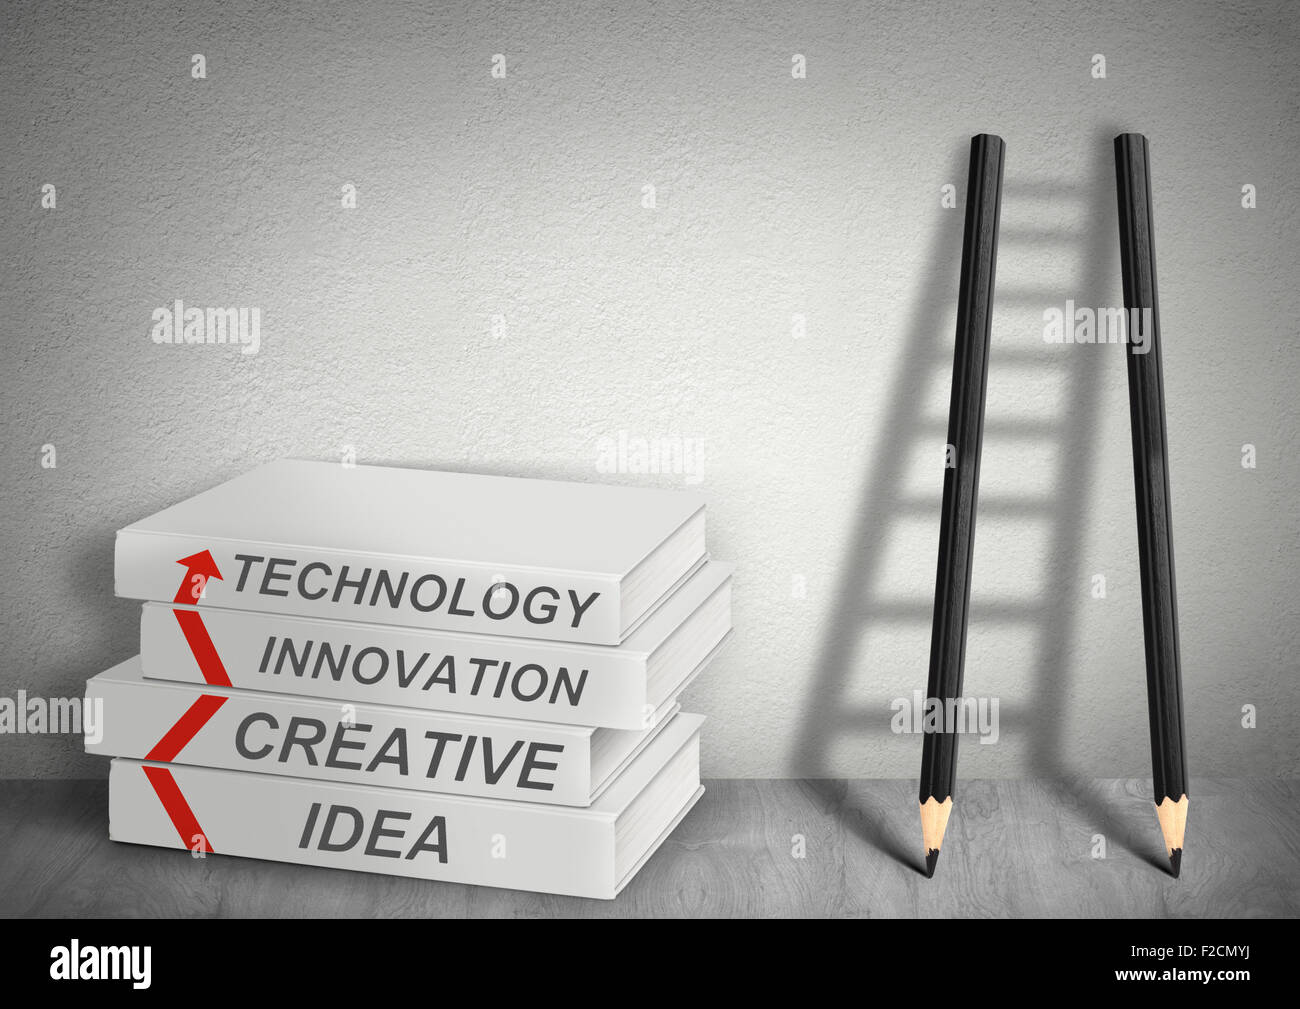 Editoria creativa, idea, tecnologia, innovazione, Ladder dalle matite, il concetto di gestione Foto Stock